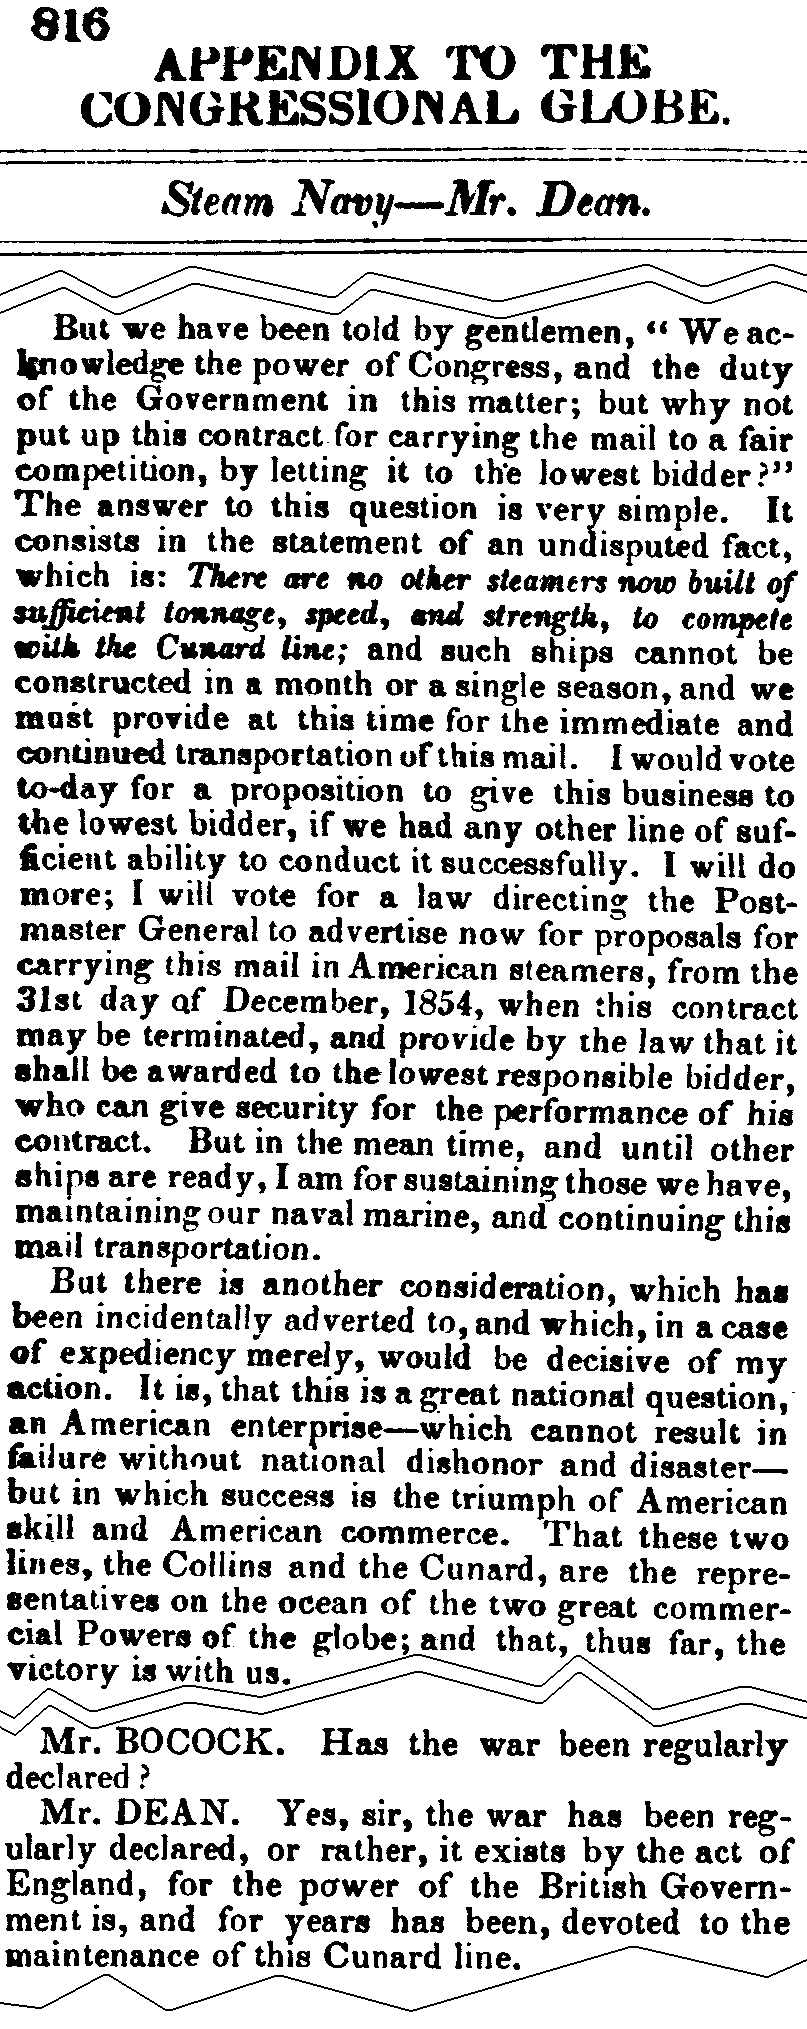 July 9, 1852: Cunard excerpts from Gilbert Dean's speech, page 816